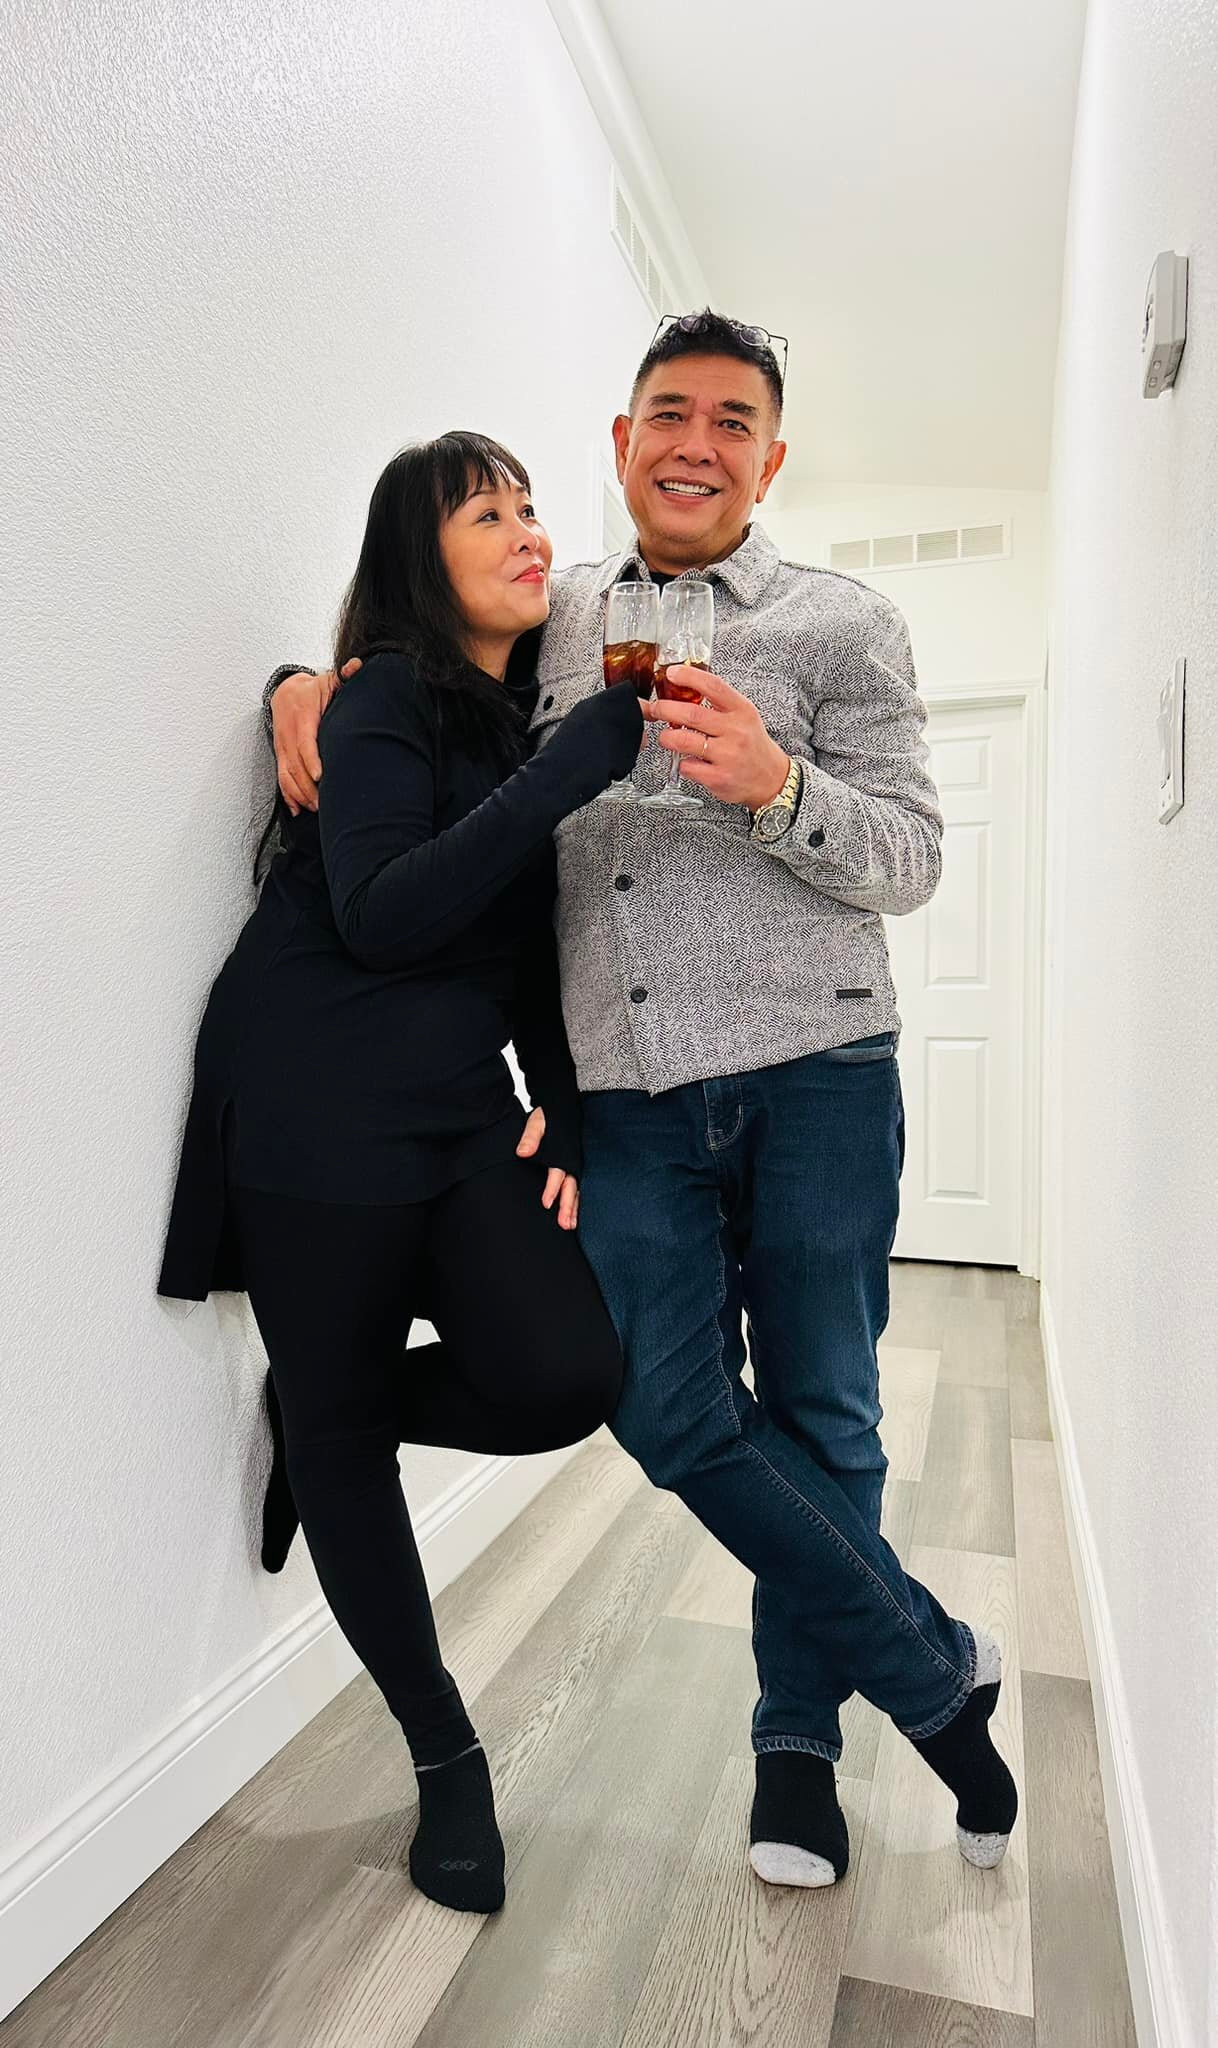 Cặp đôi cùng nhau xây dựng một gia đình hạnh phúc. Hiện tại, nghệ sĩ Lê Tuấn Anh đã lui về hậu trường, hậu thuẫn sự nghiệp cho vợ và làm kinh doanh nhà hàng.